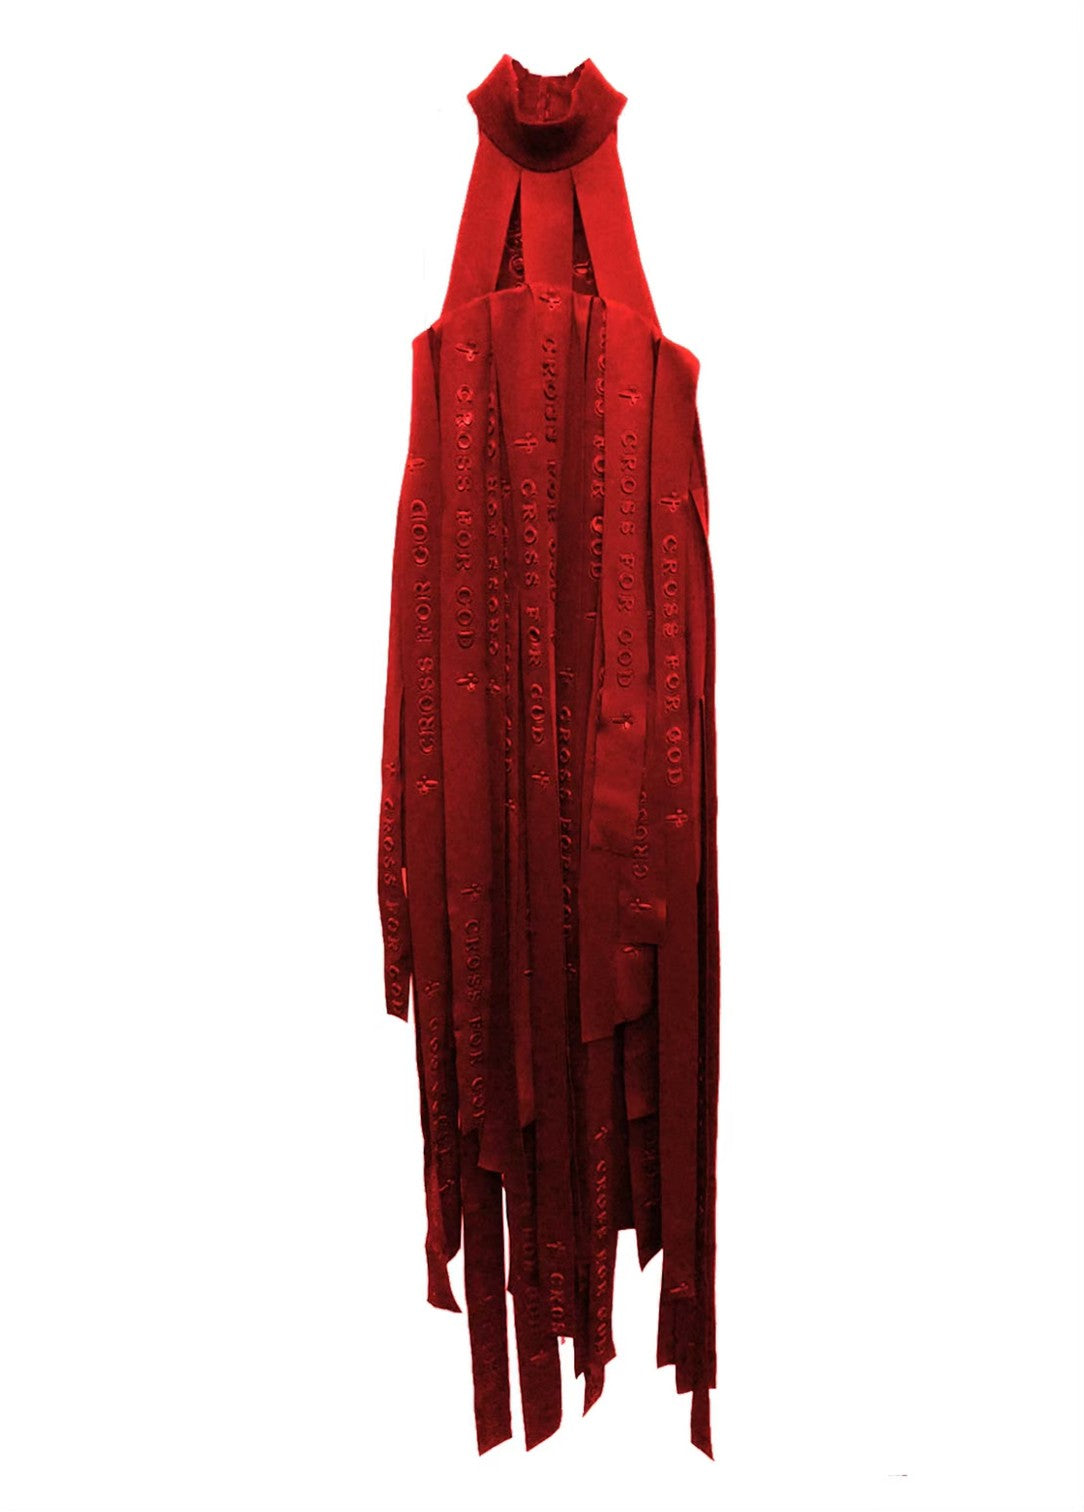 STEREOSCOPIC RIBBON TASSELS DRESS three-dimensional ribbon tassel dress